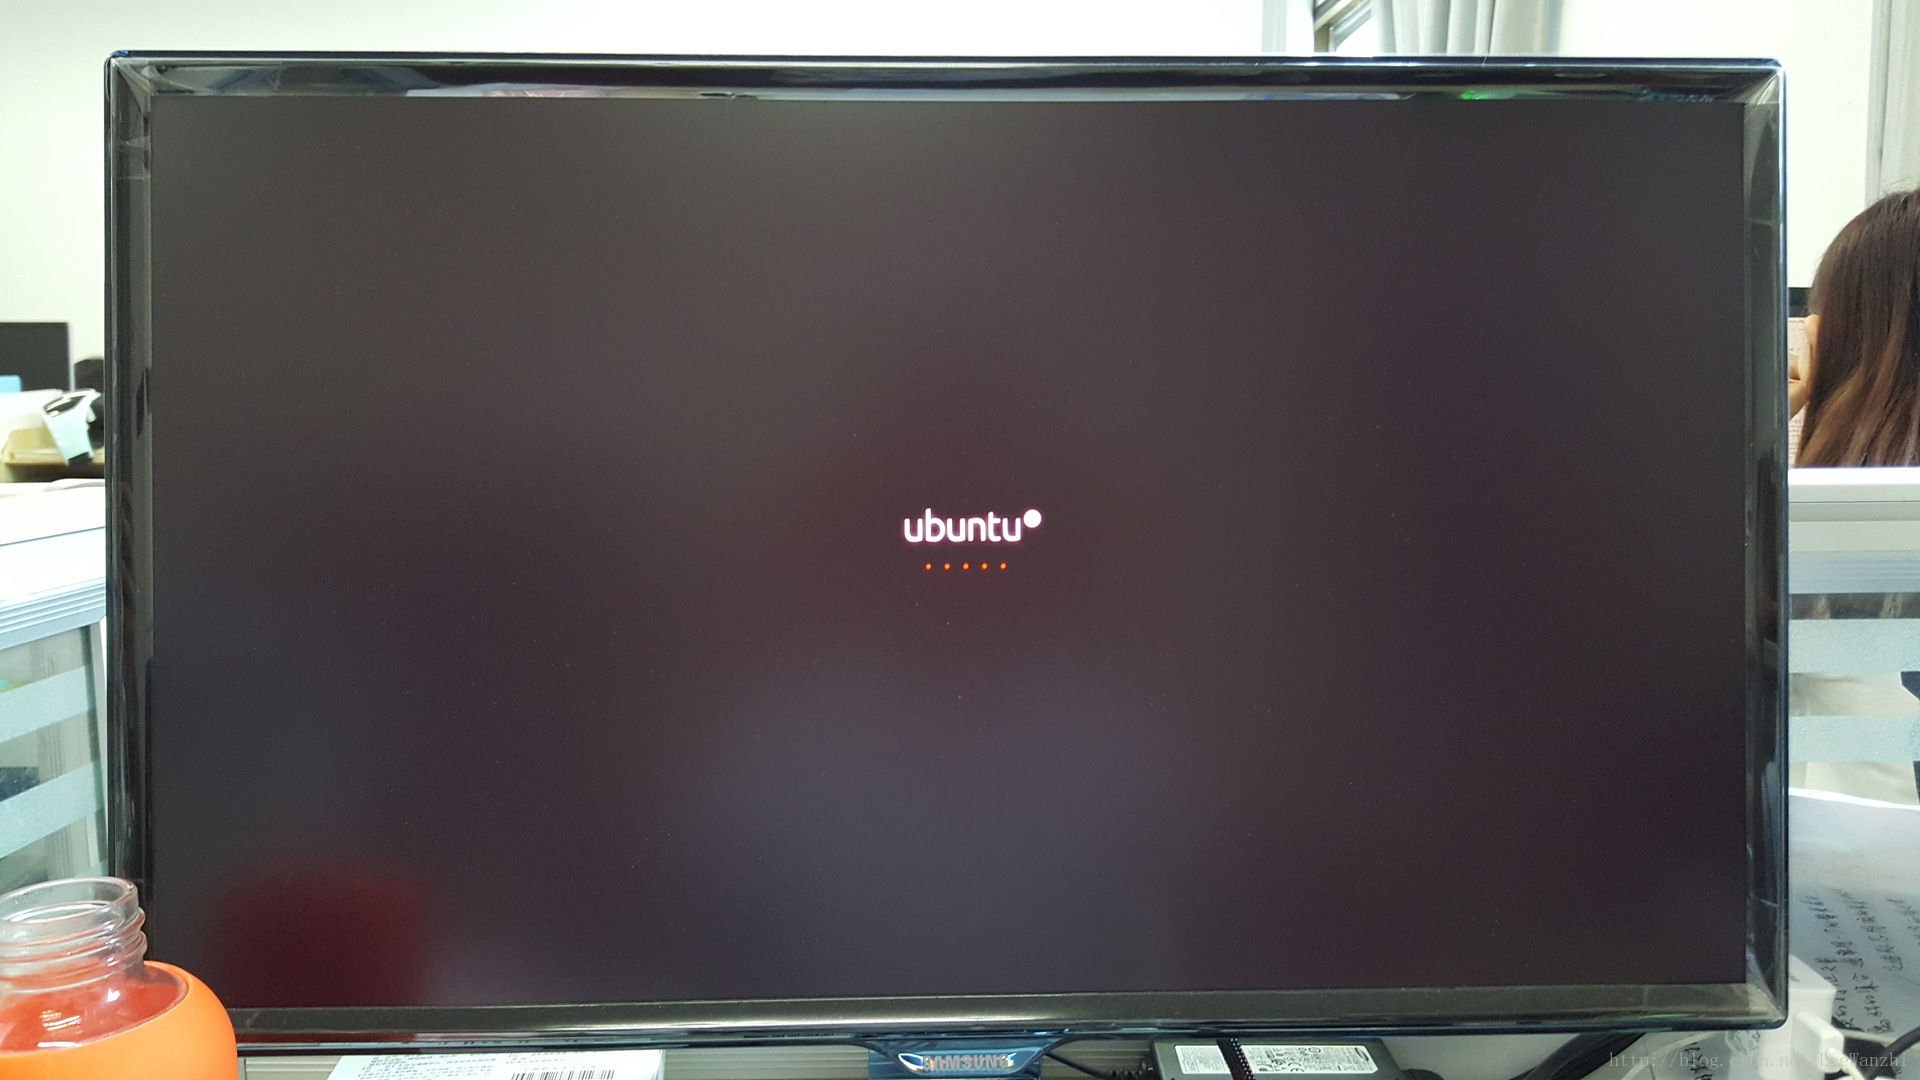 出现ubuntu的logo